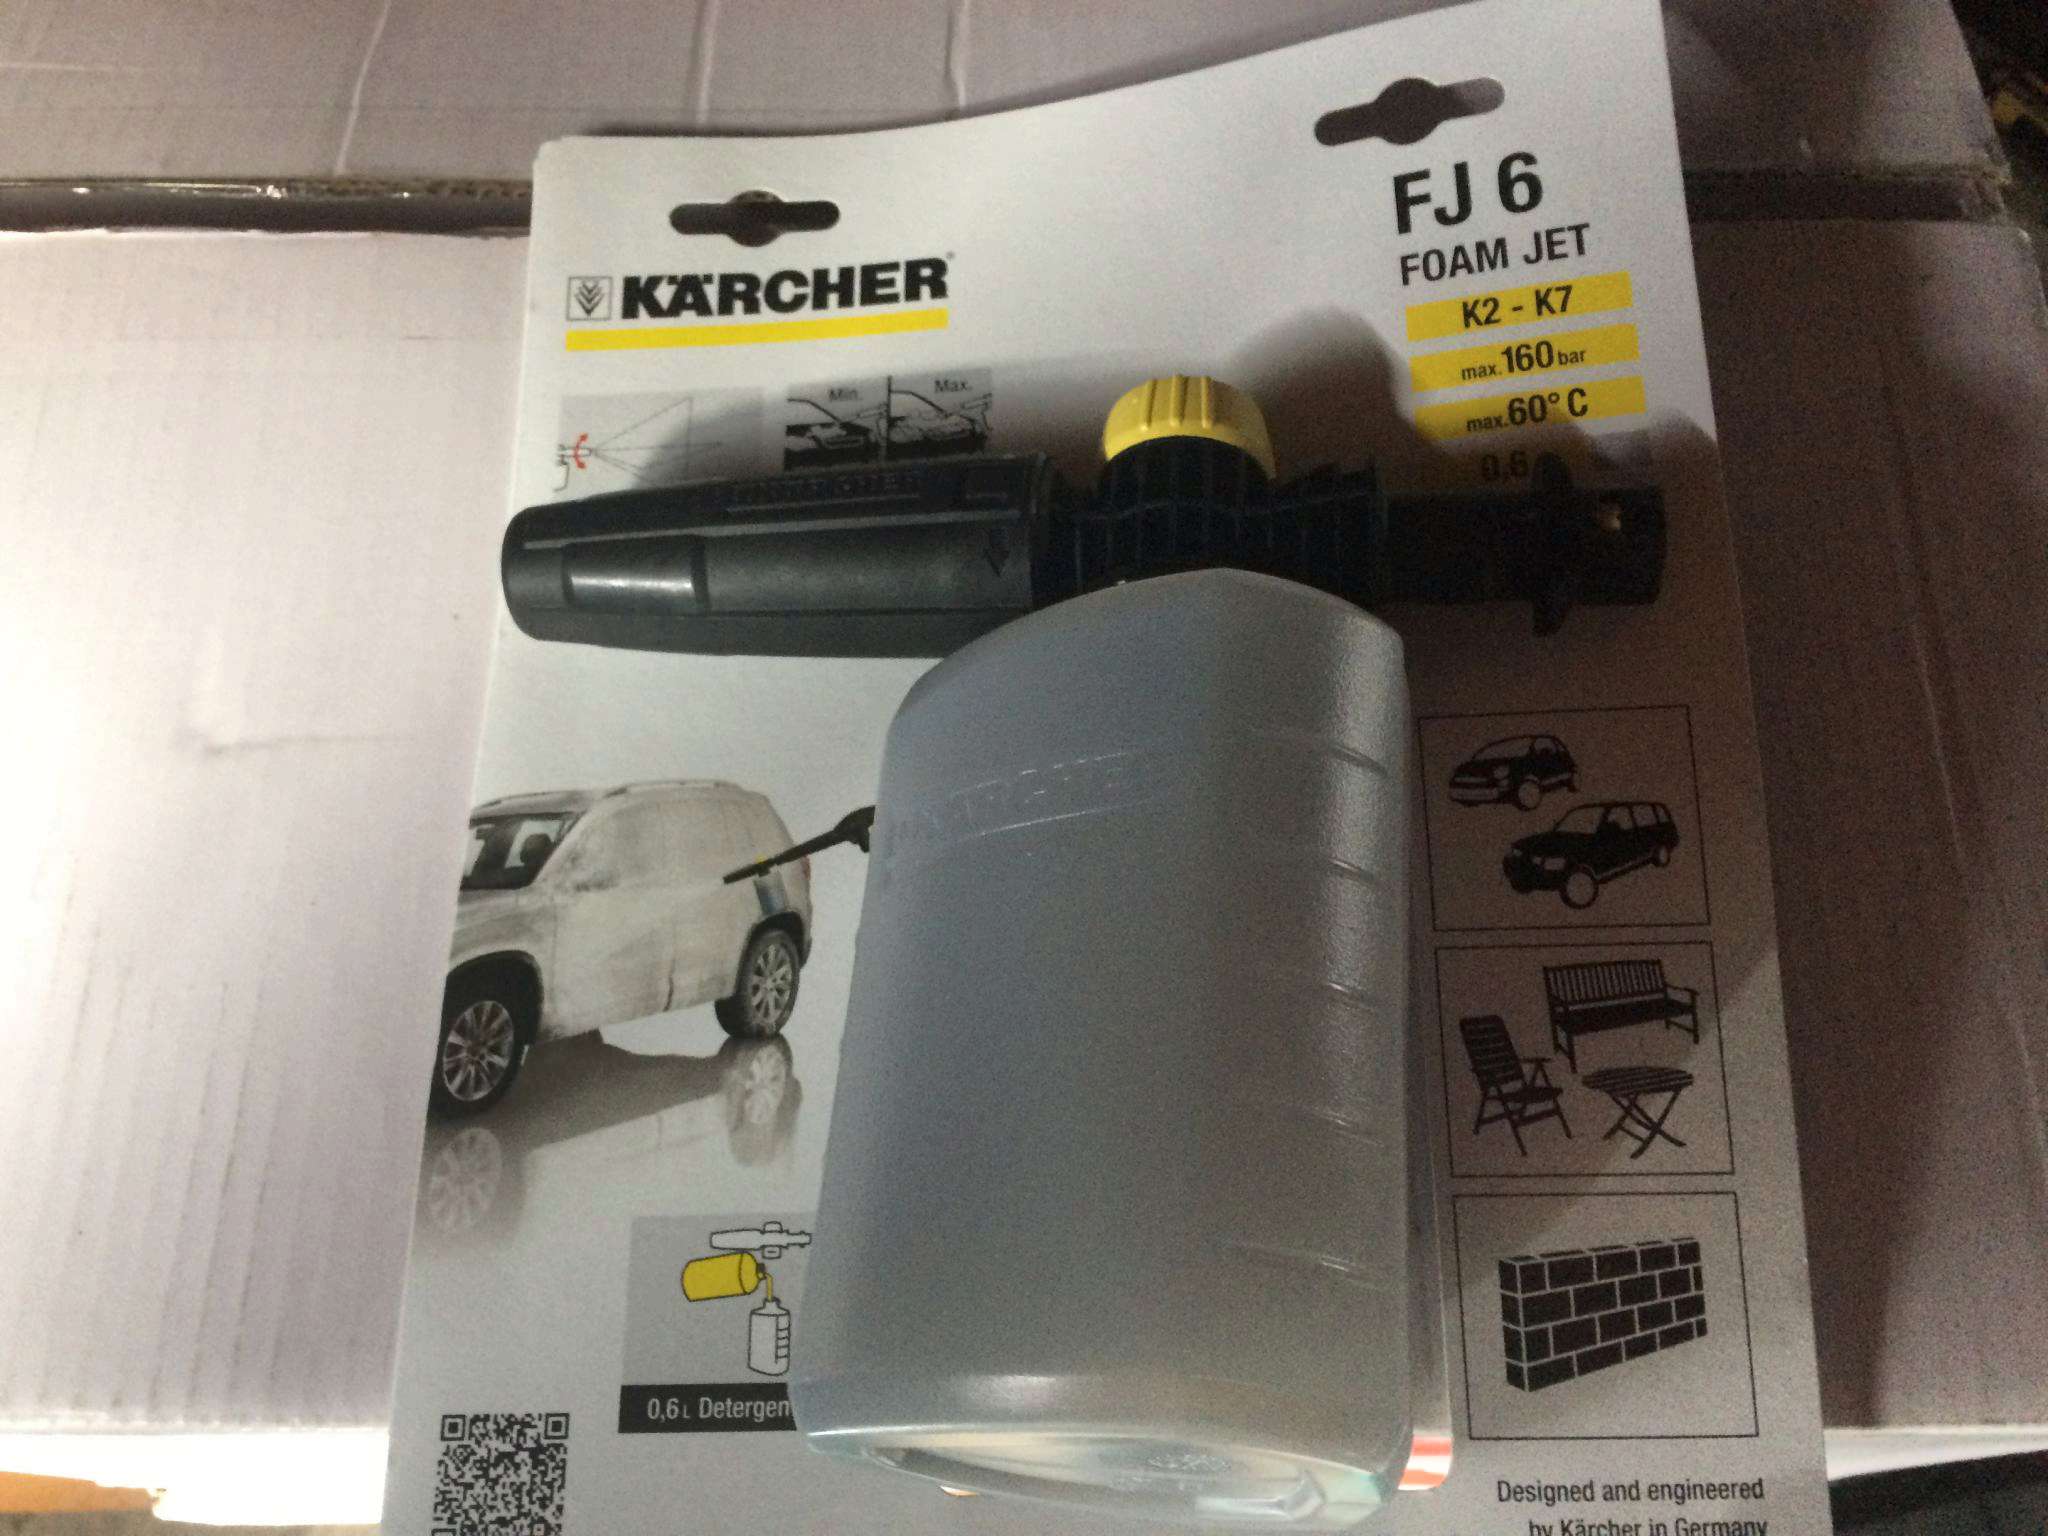 Пена для керхера купить. Karcher пенное сопло FJ 6 (2.643-147.0). Пенное сопло Karcher FJ 6. Пенообразователь Karcher FJ 6. Пенное сопло j6 Karcher.